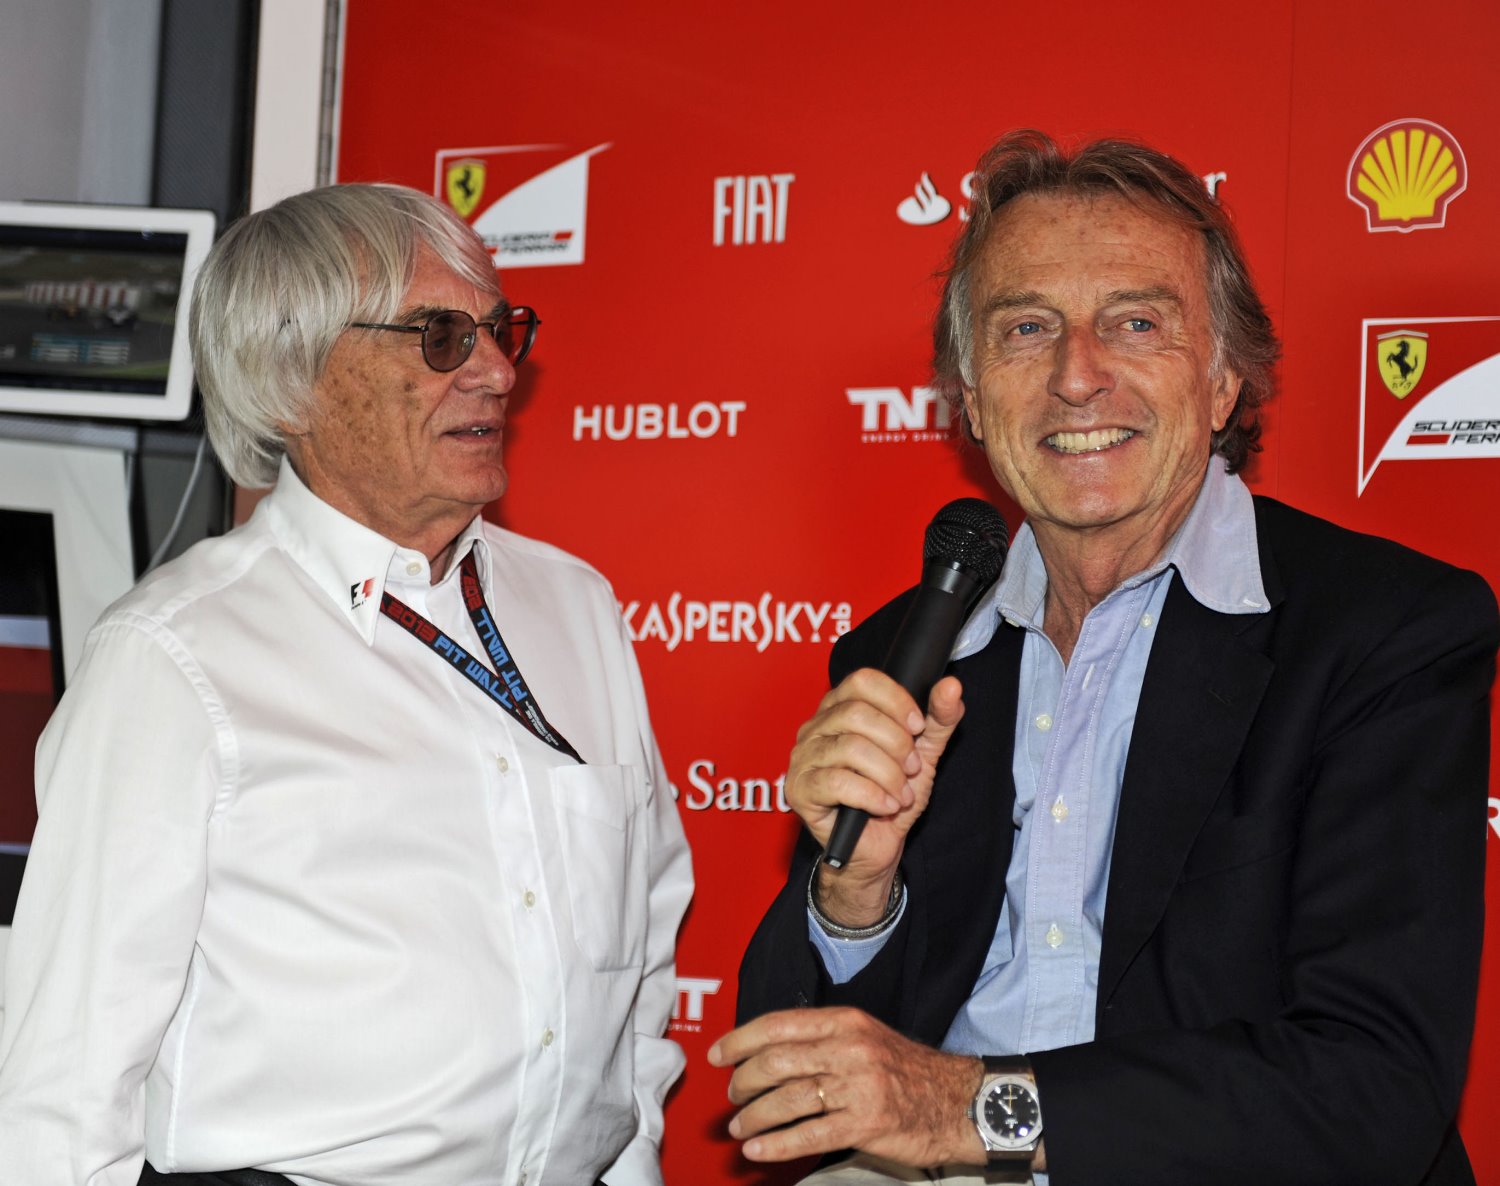 Bernie Ecclestone with Luca di Montezemolo back in 2013